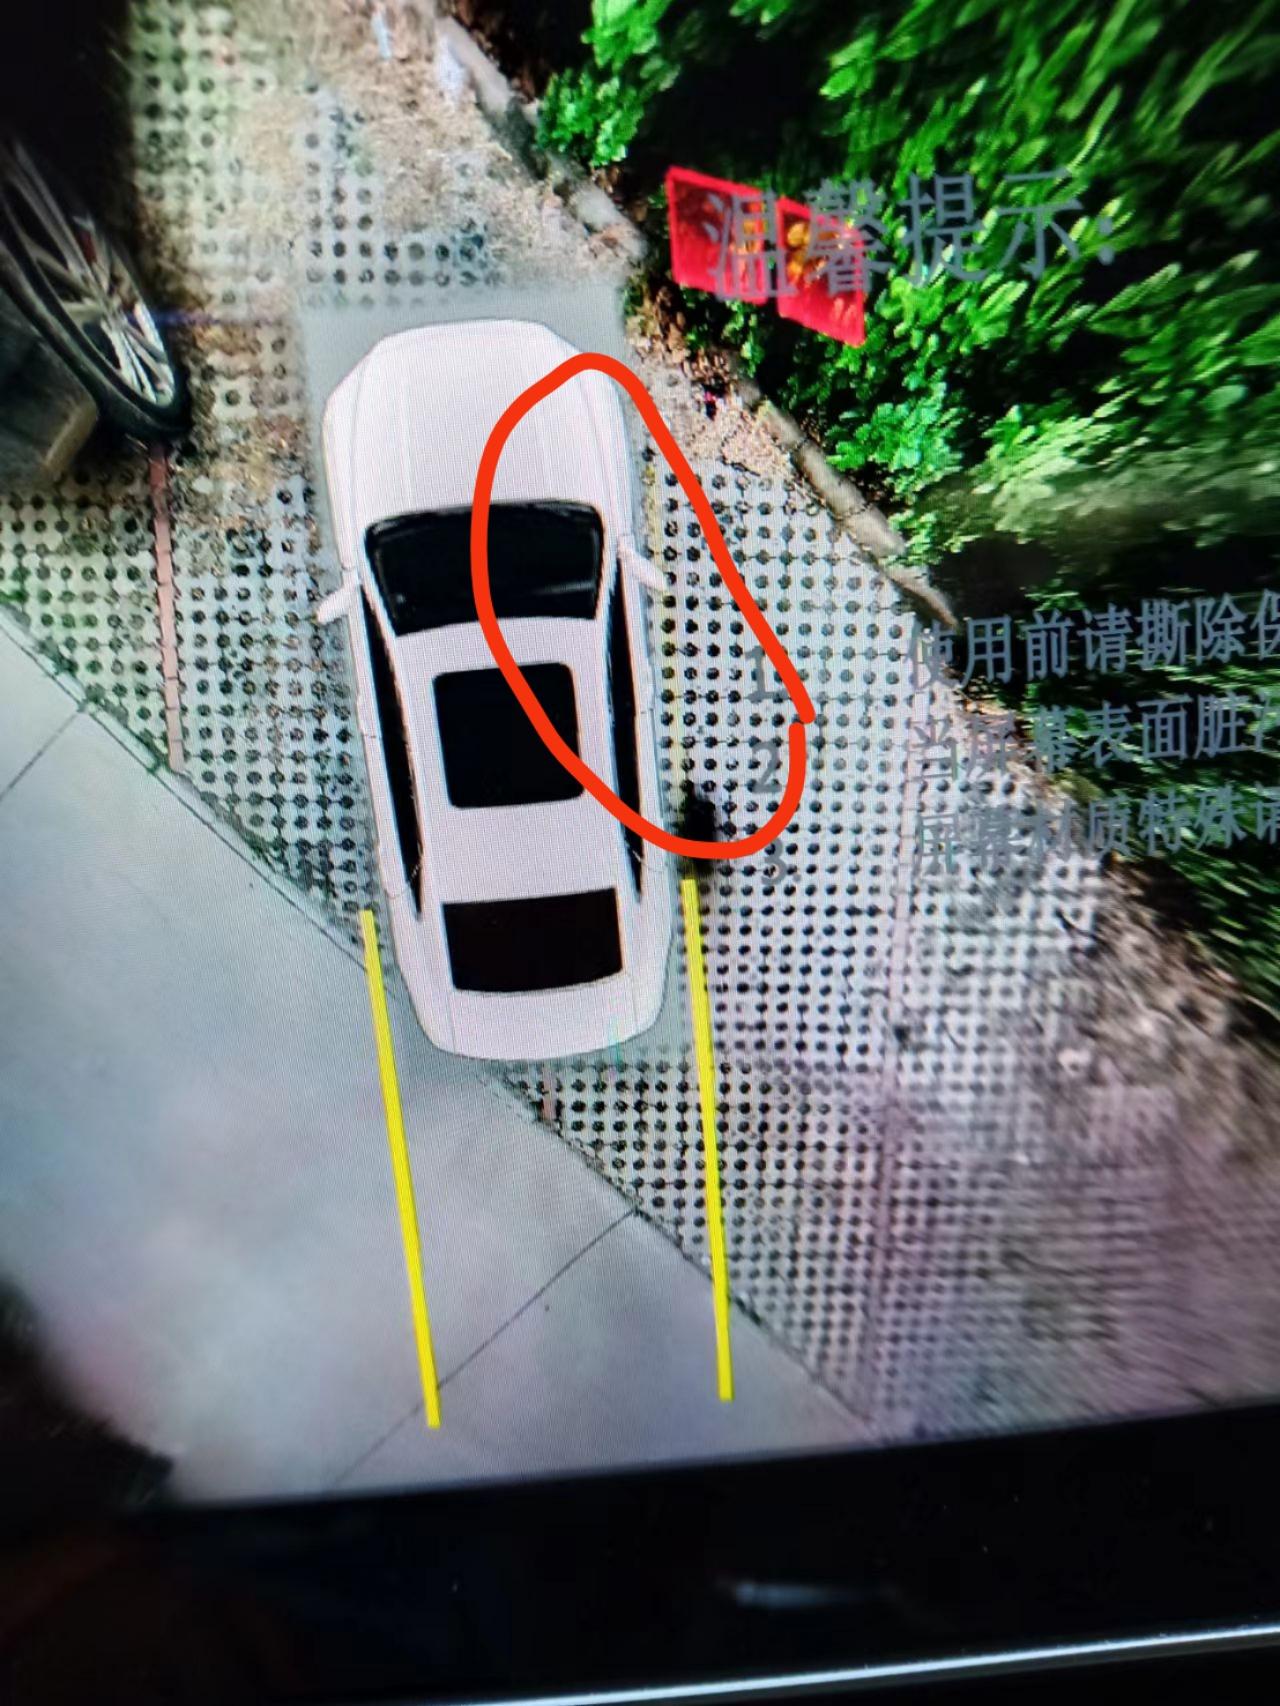 吉利星瑞 雷达上哪个黑色的是什么 我倒车前进怠速 右边黄色的线不显示是怎么回事 不应该是两条线吗？ 请问